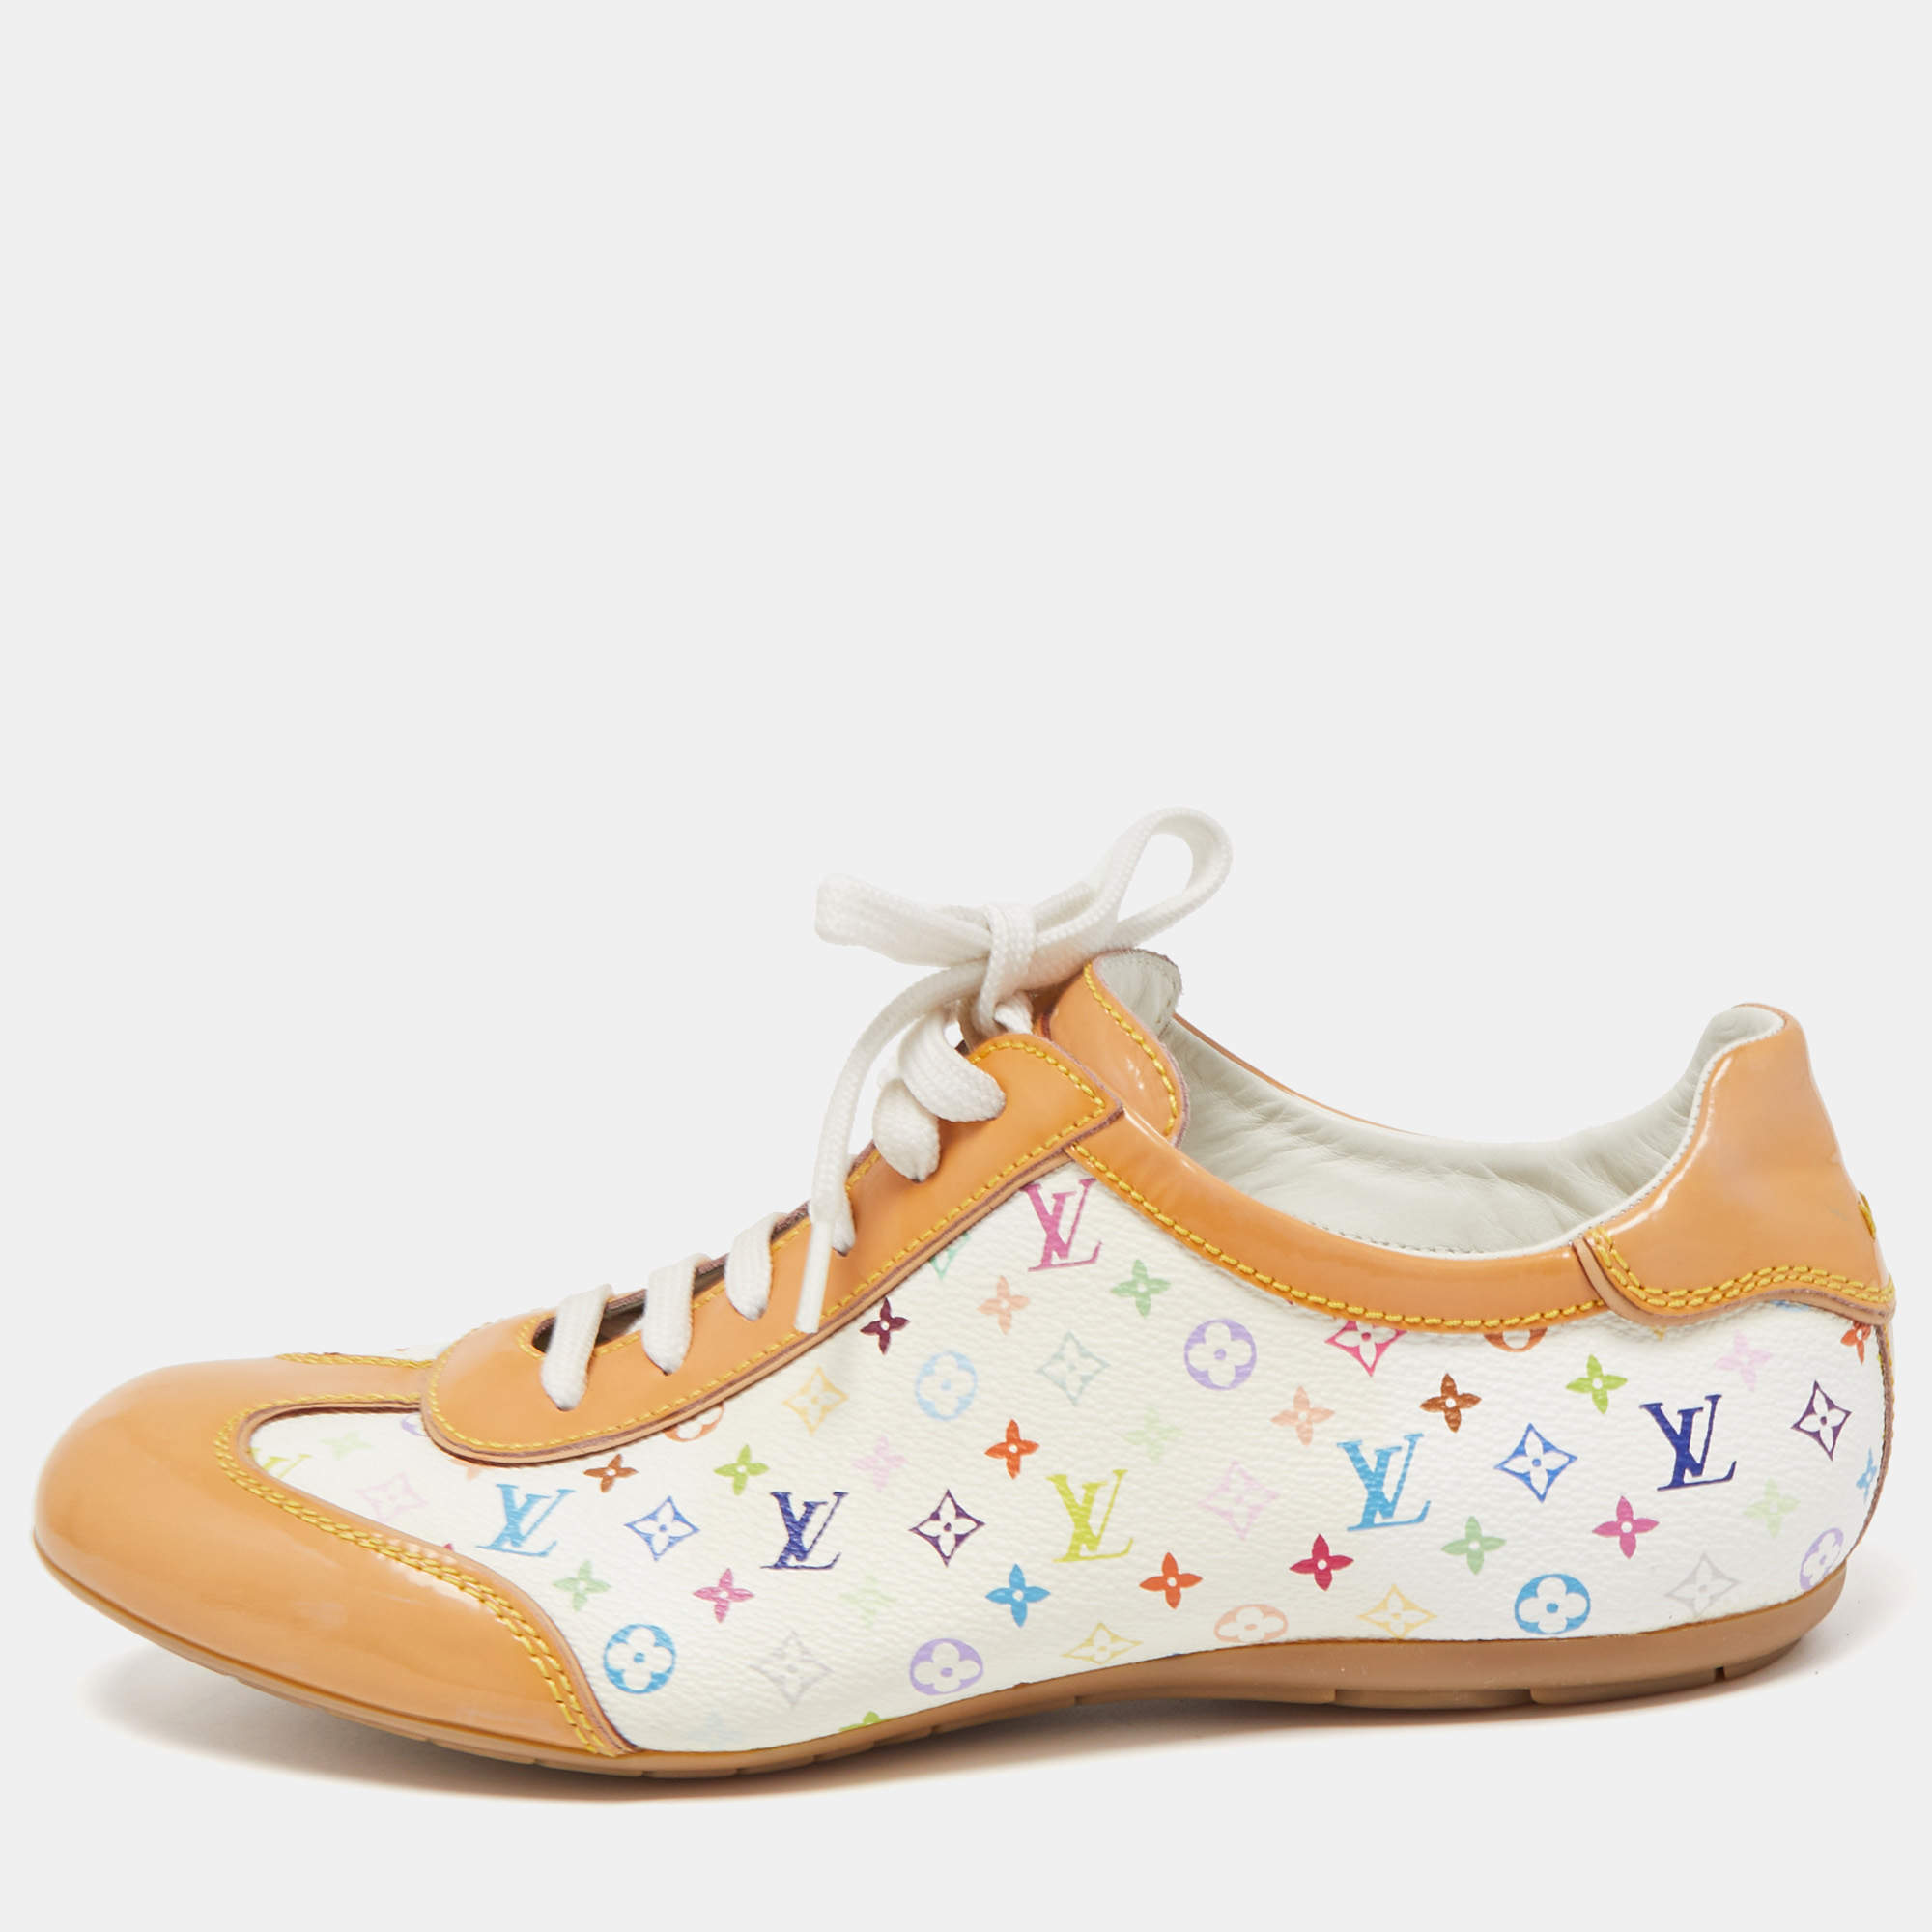 Louis Vuitton Monogram Sneakers Tennis Shoes Canvas Leather LV